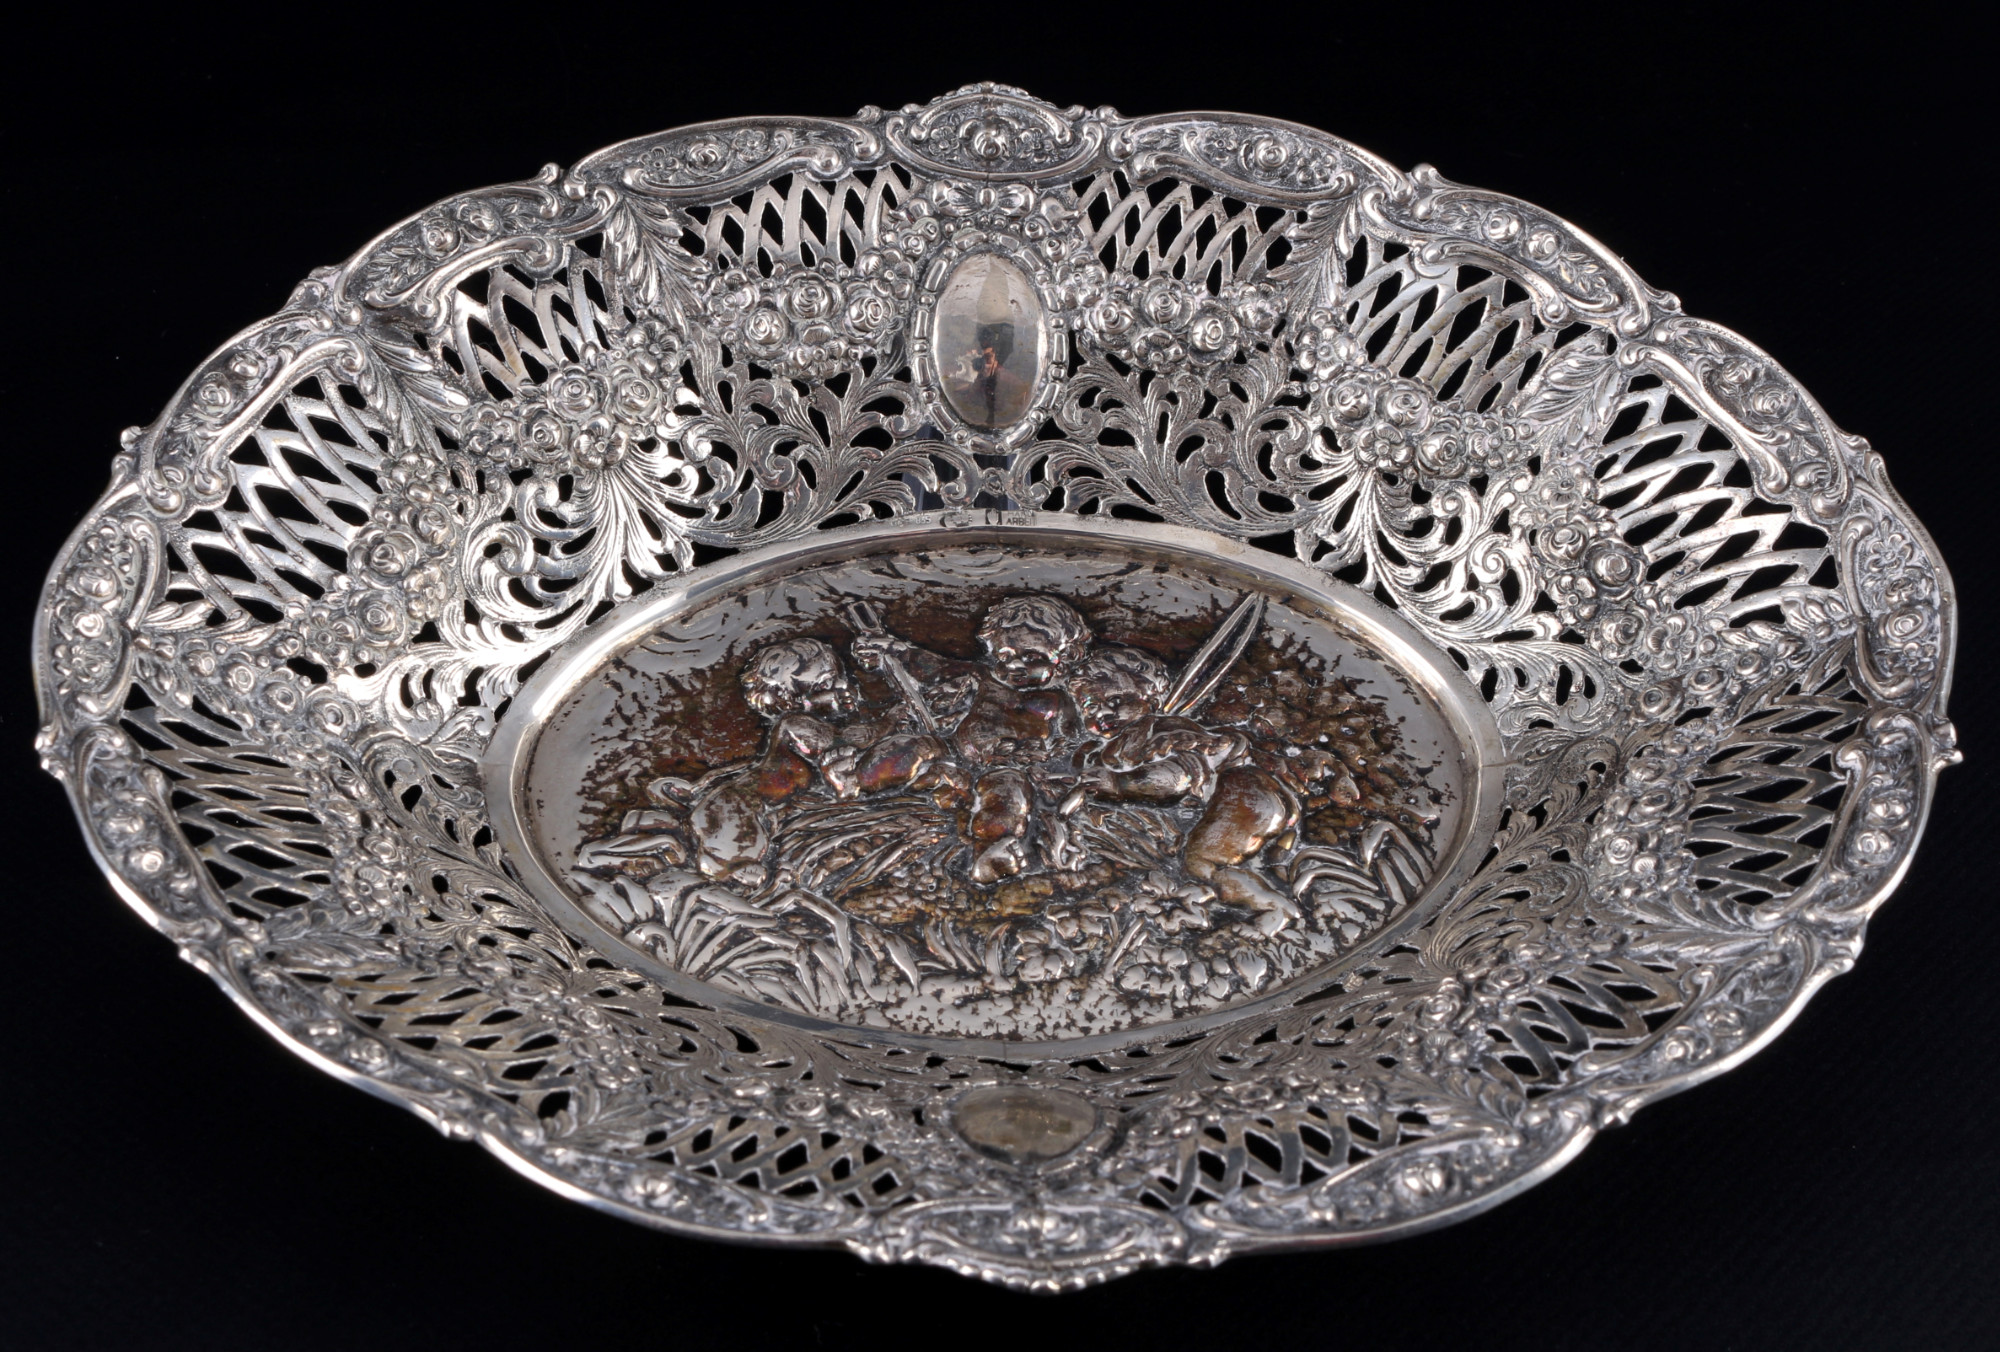 800 / 835 silver 3 cutwork bowls with cherub and shephard sceneries, Silber Durchbruchschalen, - Image 2 of 5